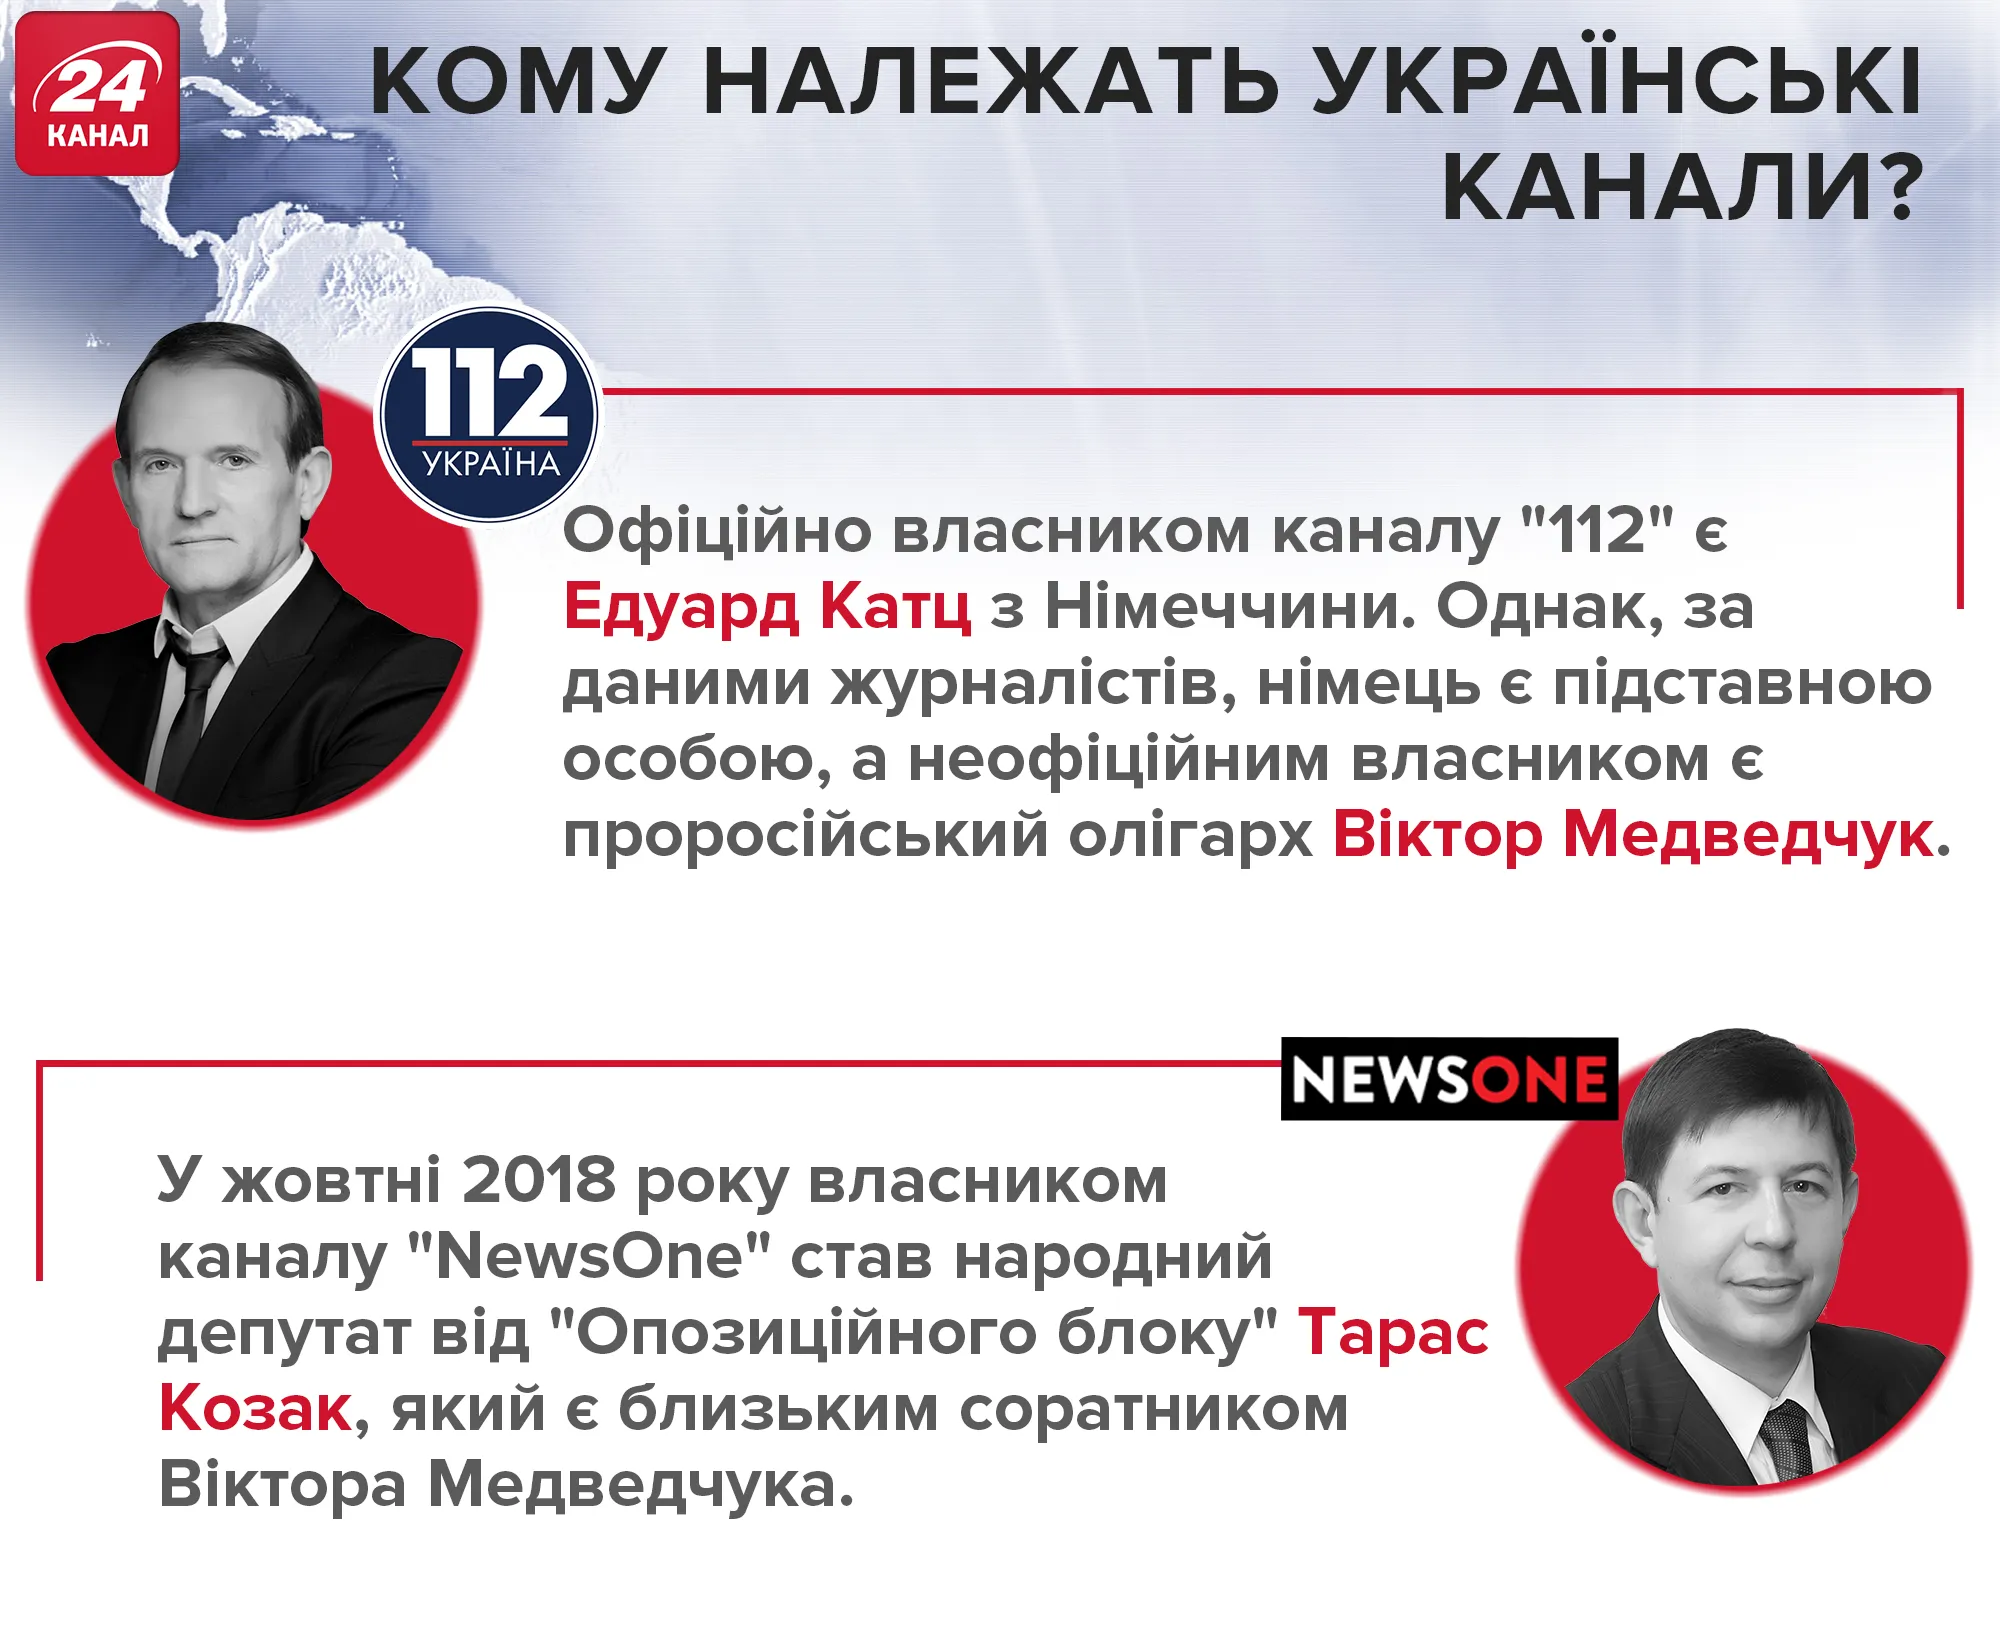 Кому належать українські телеканали / інфографіка 24 каналу